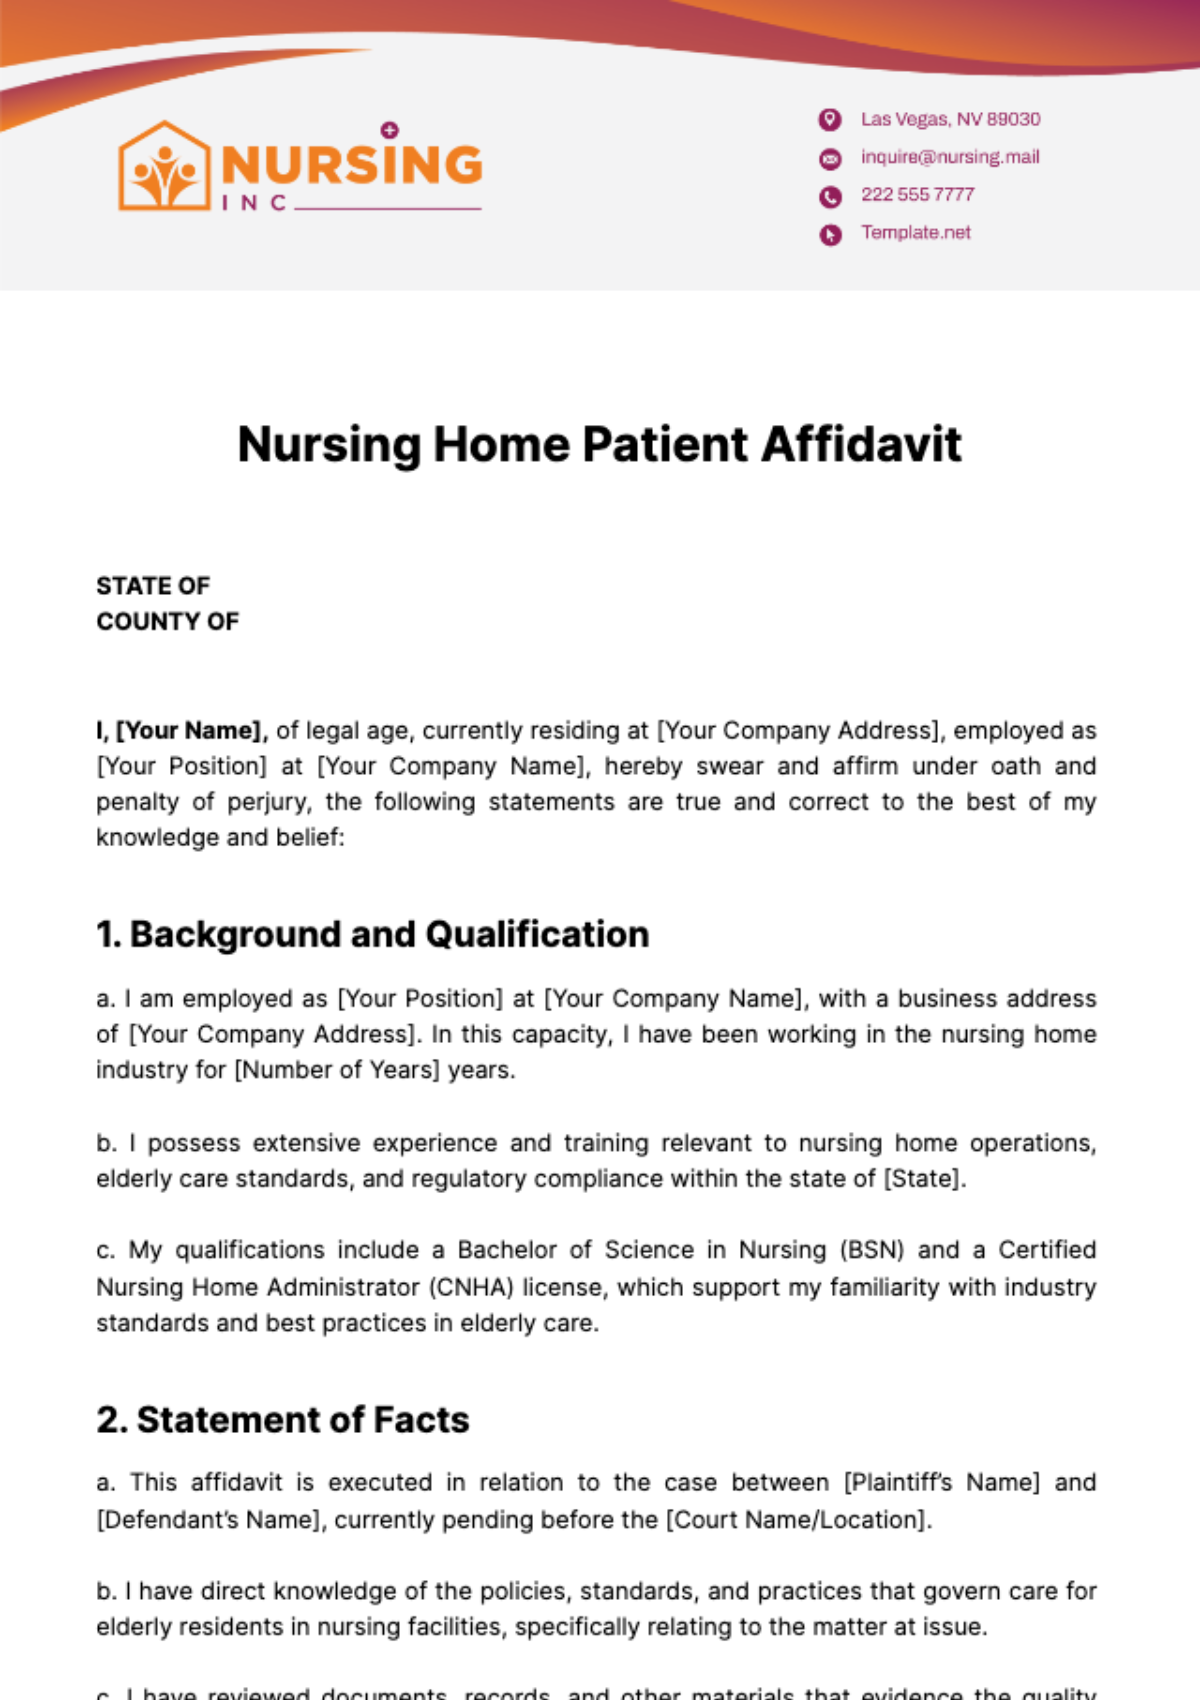 Nursing Home Patient Affidavit Template